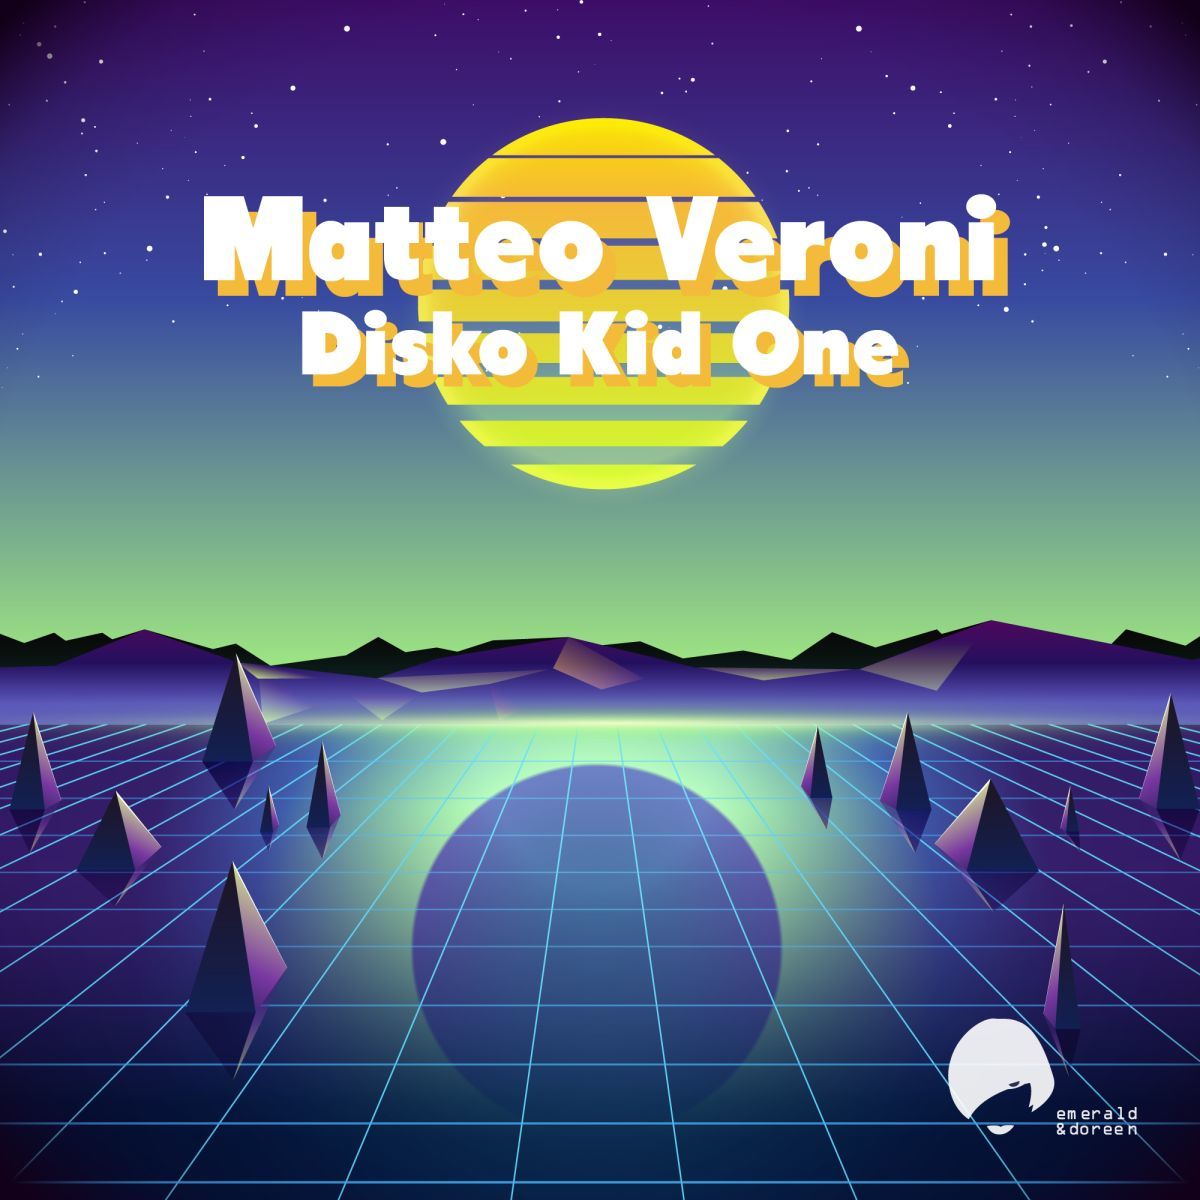 Matteo Veroni - Disco Kid One / Emerald & Doreen Records